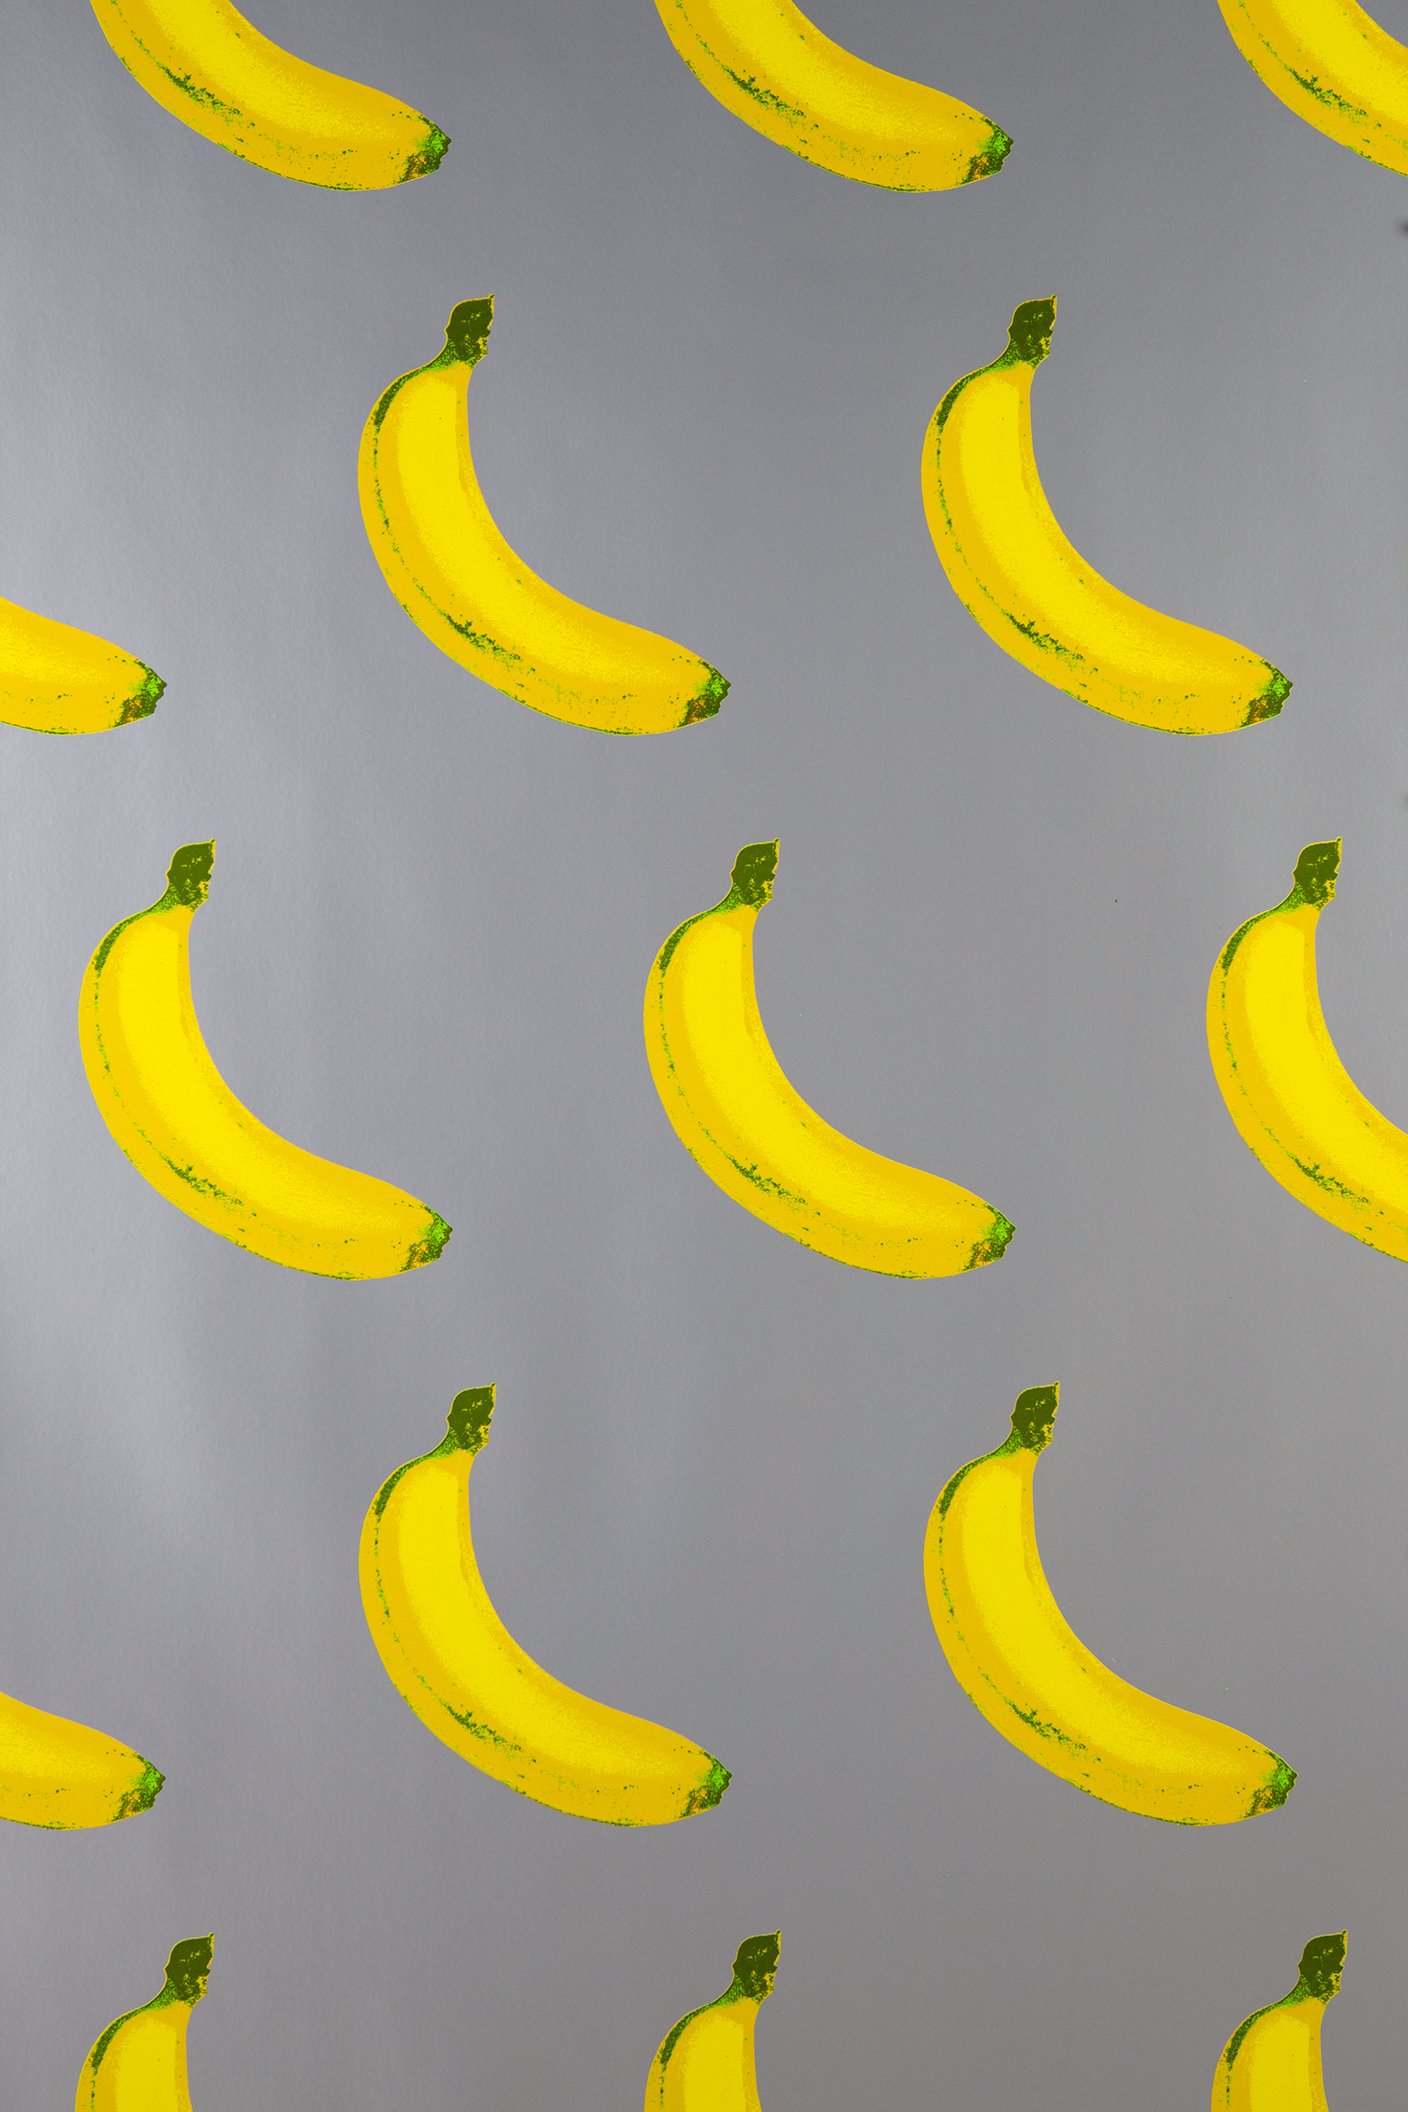 4K Banana WallpaperAmazoninAppstore for Android